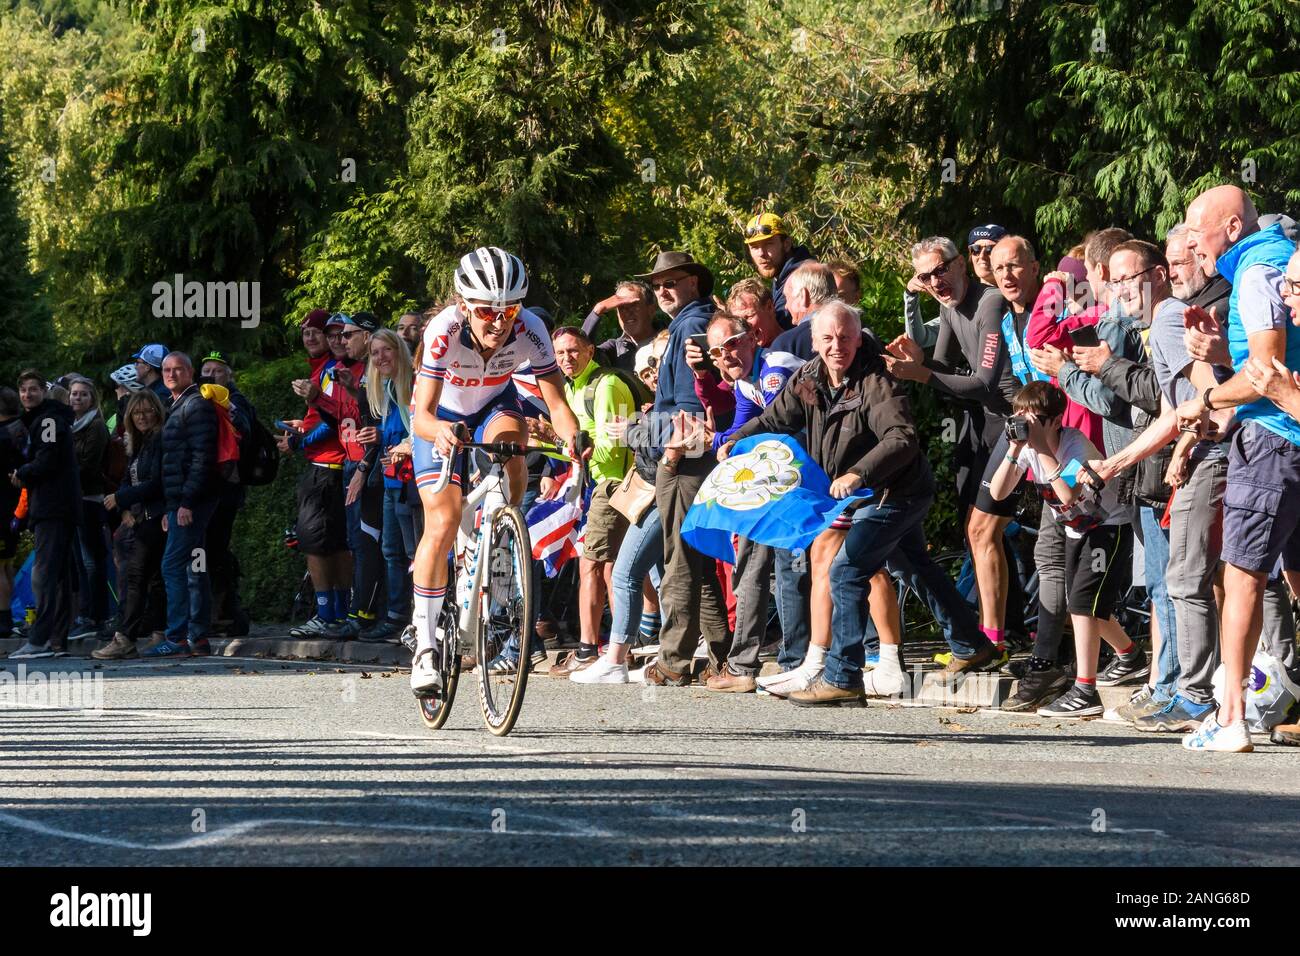 Lizzie Deignan, road racing ciclista Bicicletta Equitazione, concorrenti in gara ciclistica, allietate dalla folla di sostenitori - UCI Campionati del Mondo, Harrogate, GB, UK. Foto Stock